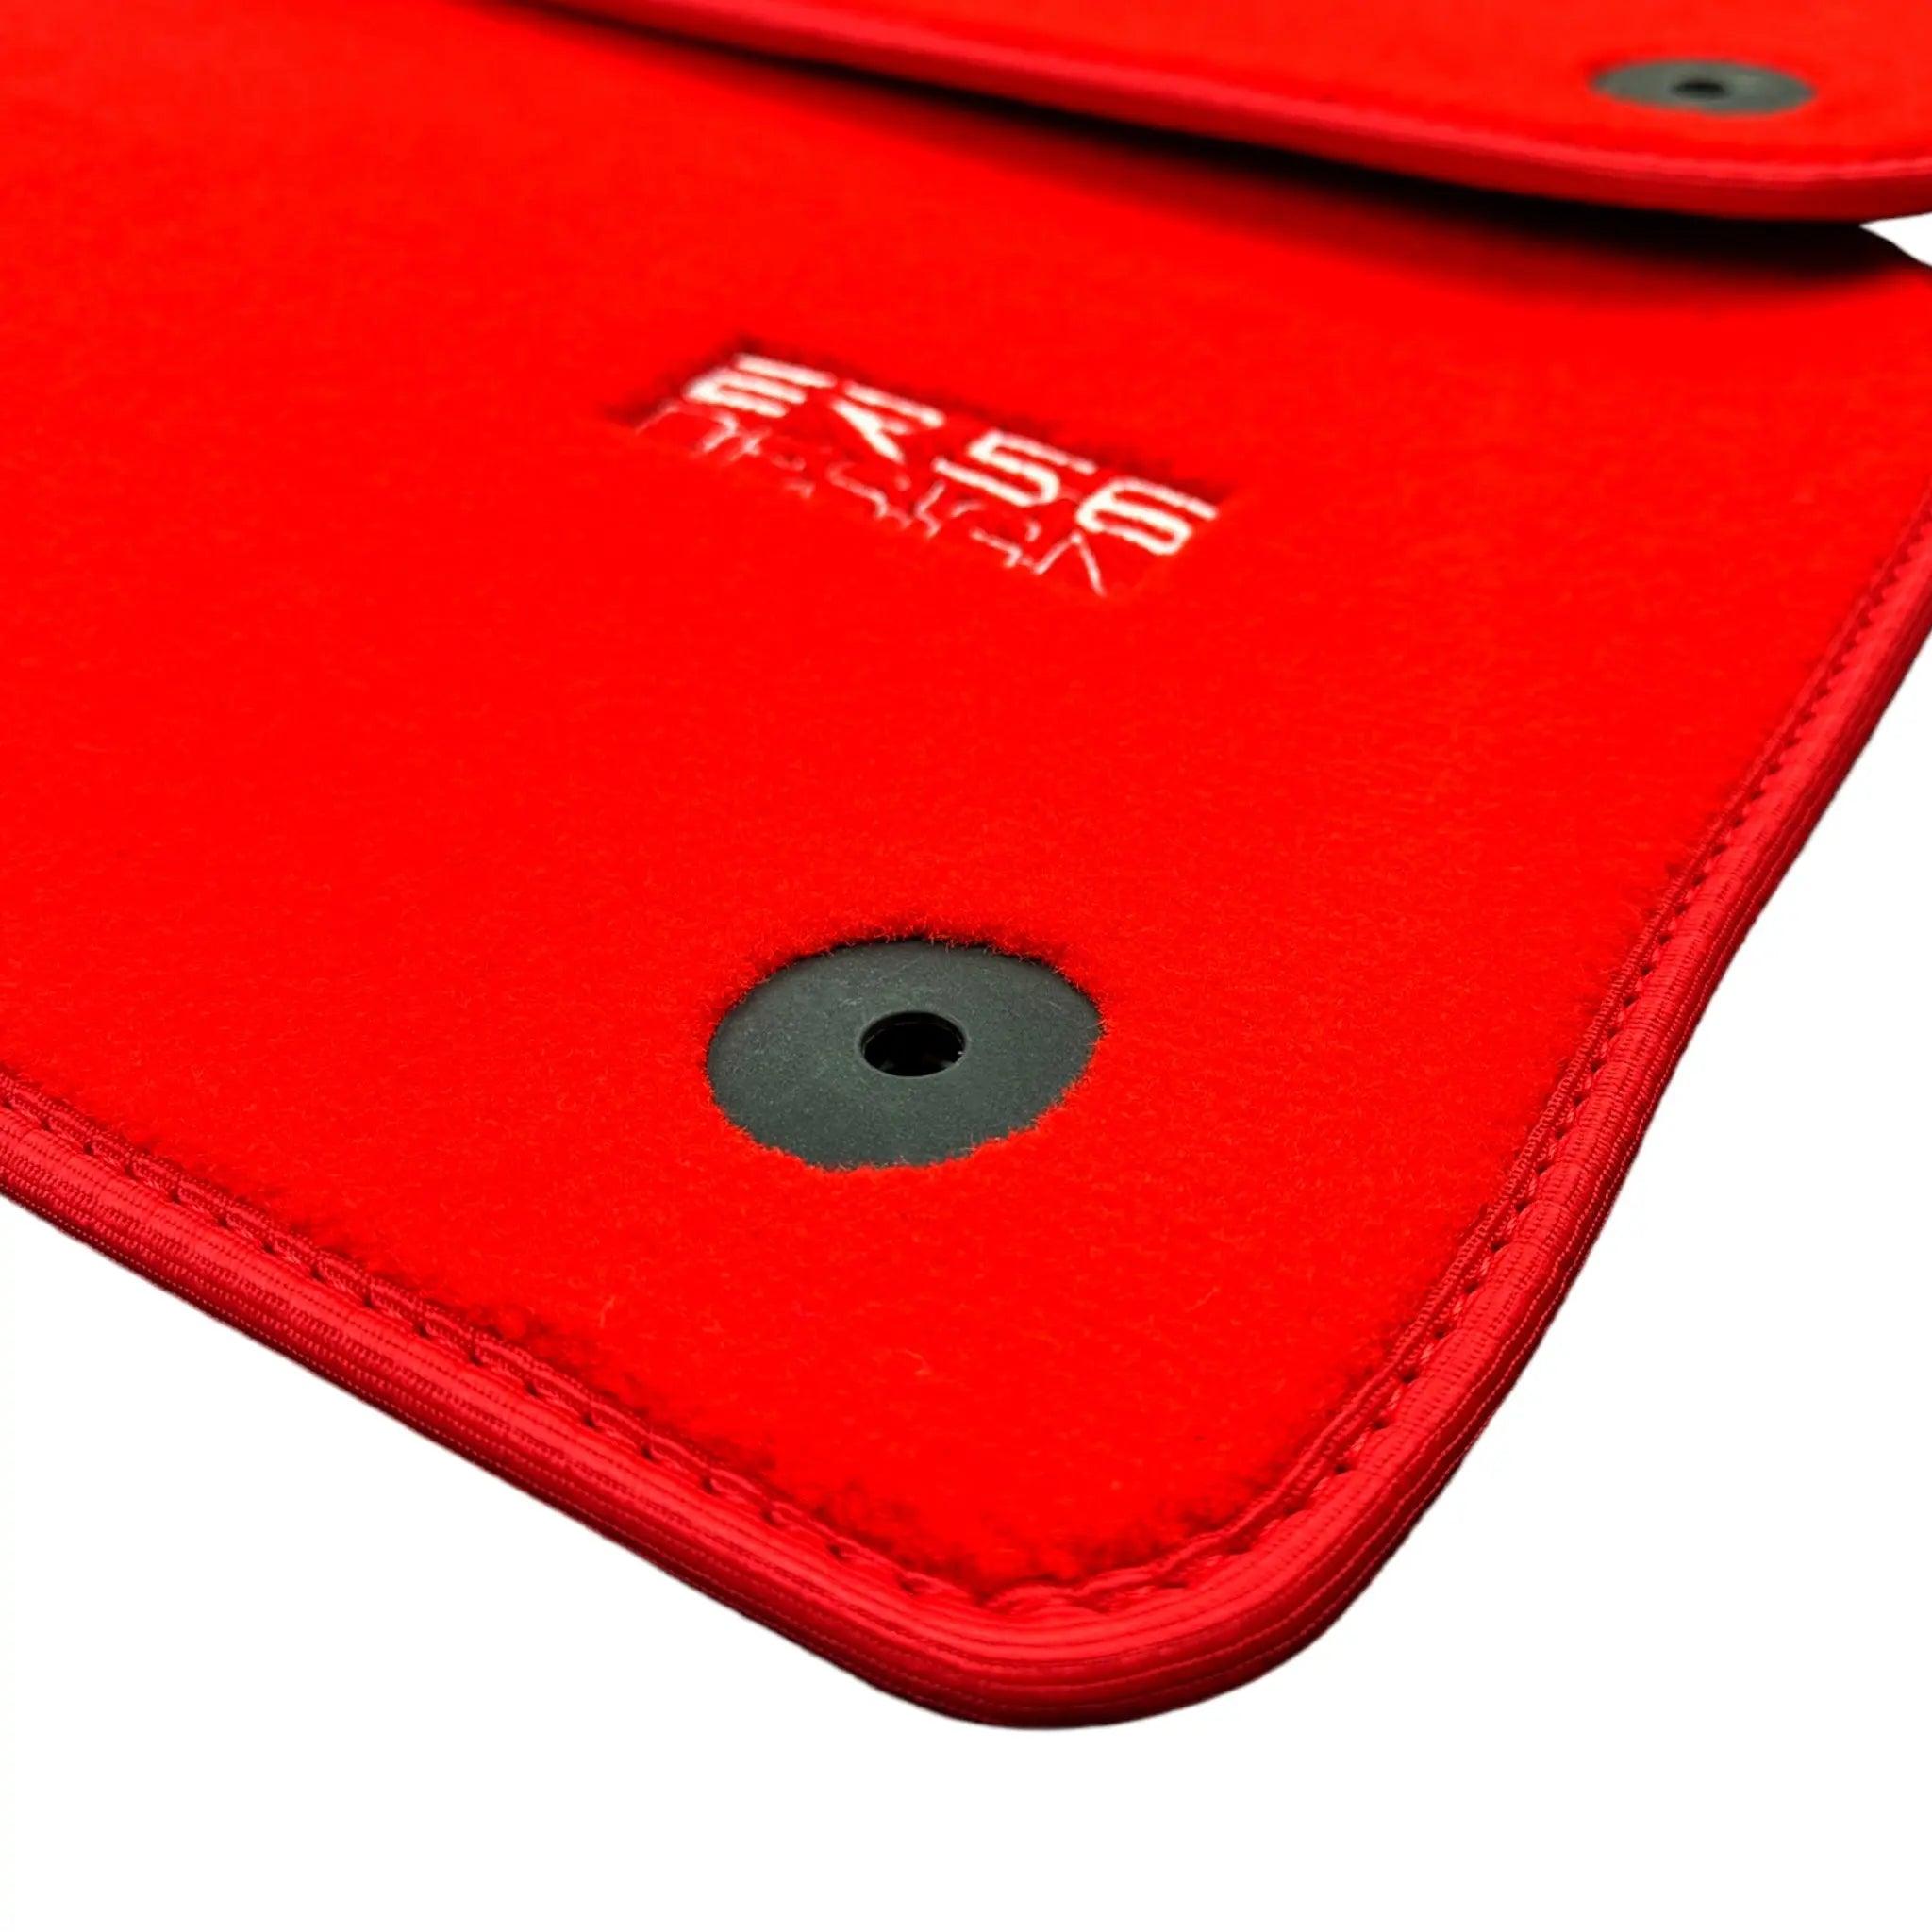 Red Floor Mats for Audi A8 D3 (2002-2010) | ER56 Design